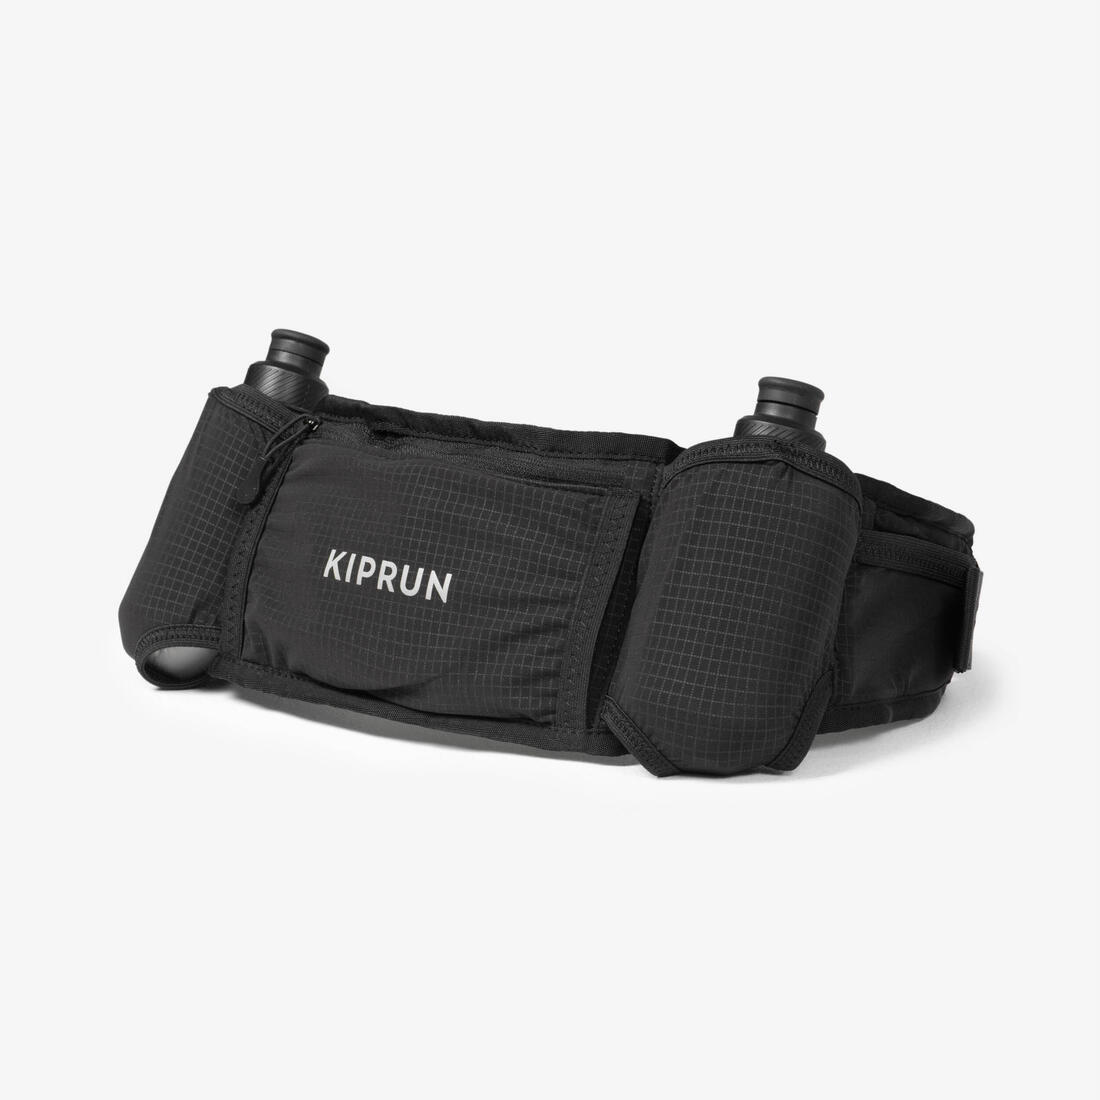 KIPRUN (キプラン) ランニング ユニセックス ハイドレーションベルト 250mlボトル2本 Belt 500